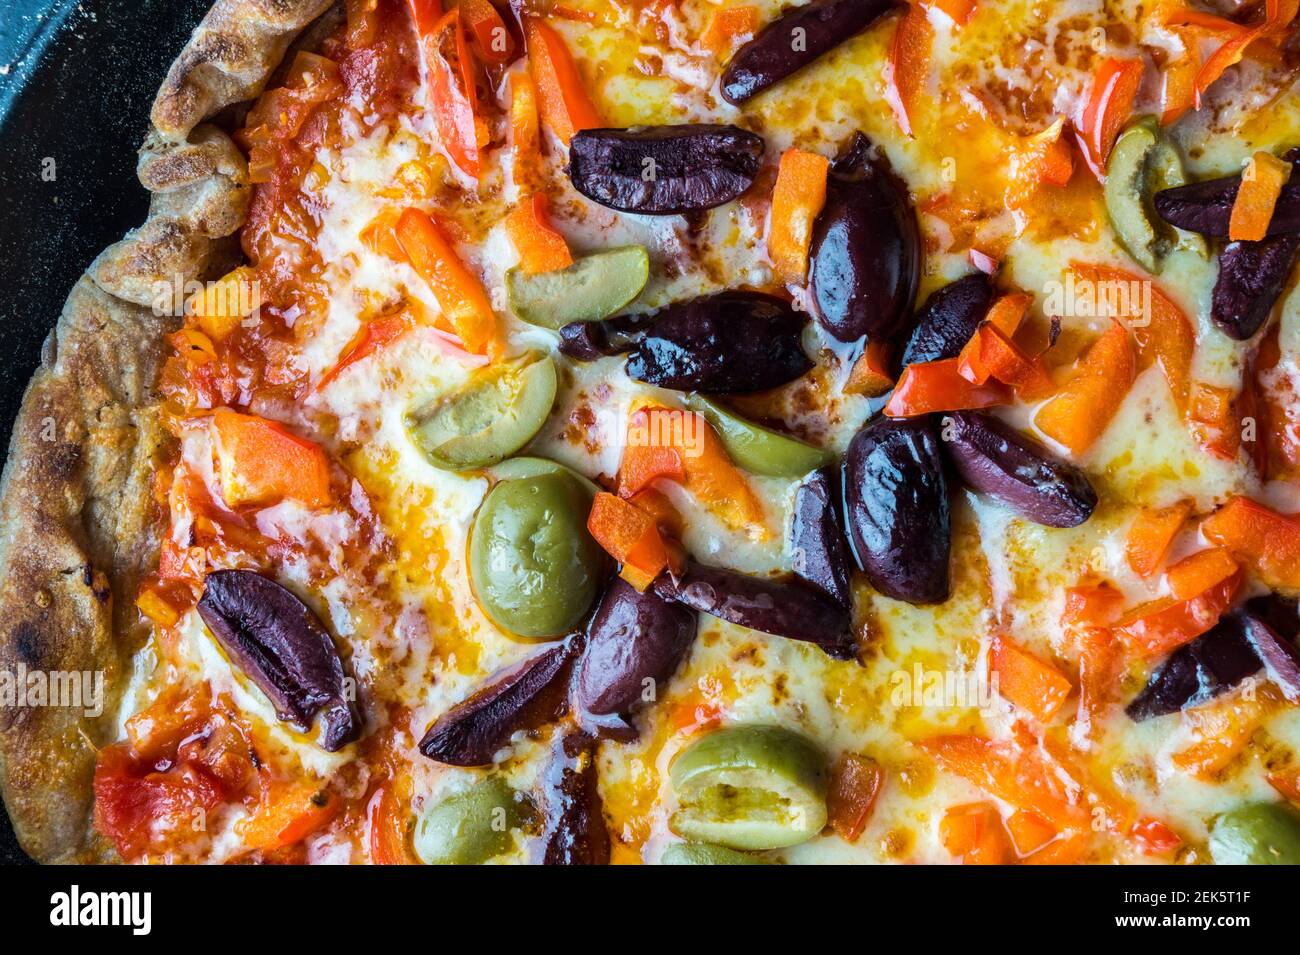 Nahaufnahme einer gegrillten hausgemachten Pizza mit Tomatenmark, Chorizo, Olive, Cheddar-Käse und Paprika Belag in einer blauen Le Creuset Bratpfanne Stockfoto